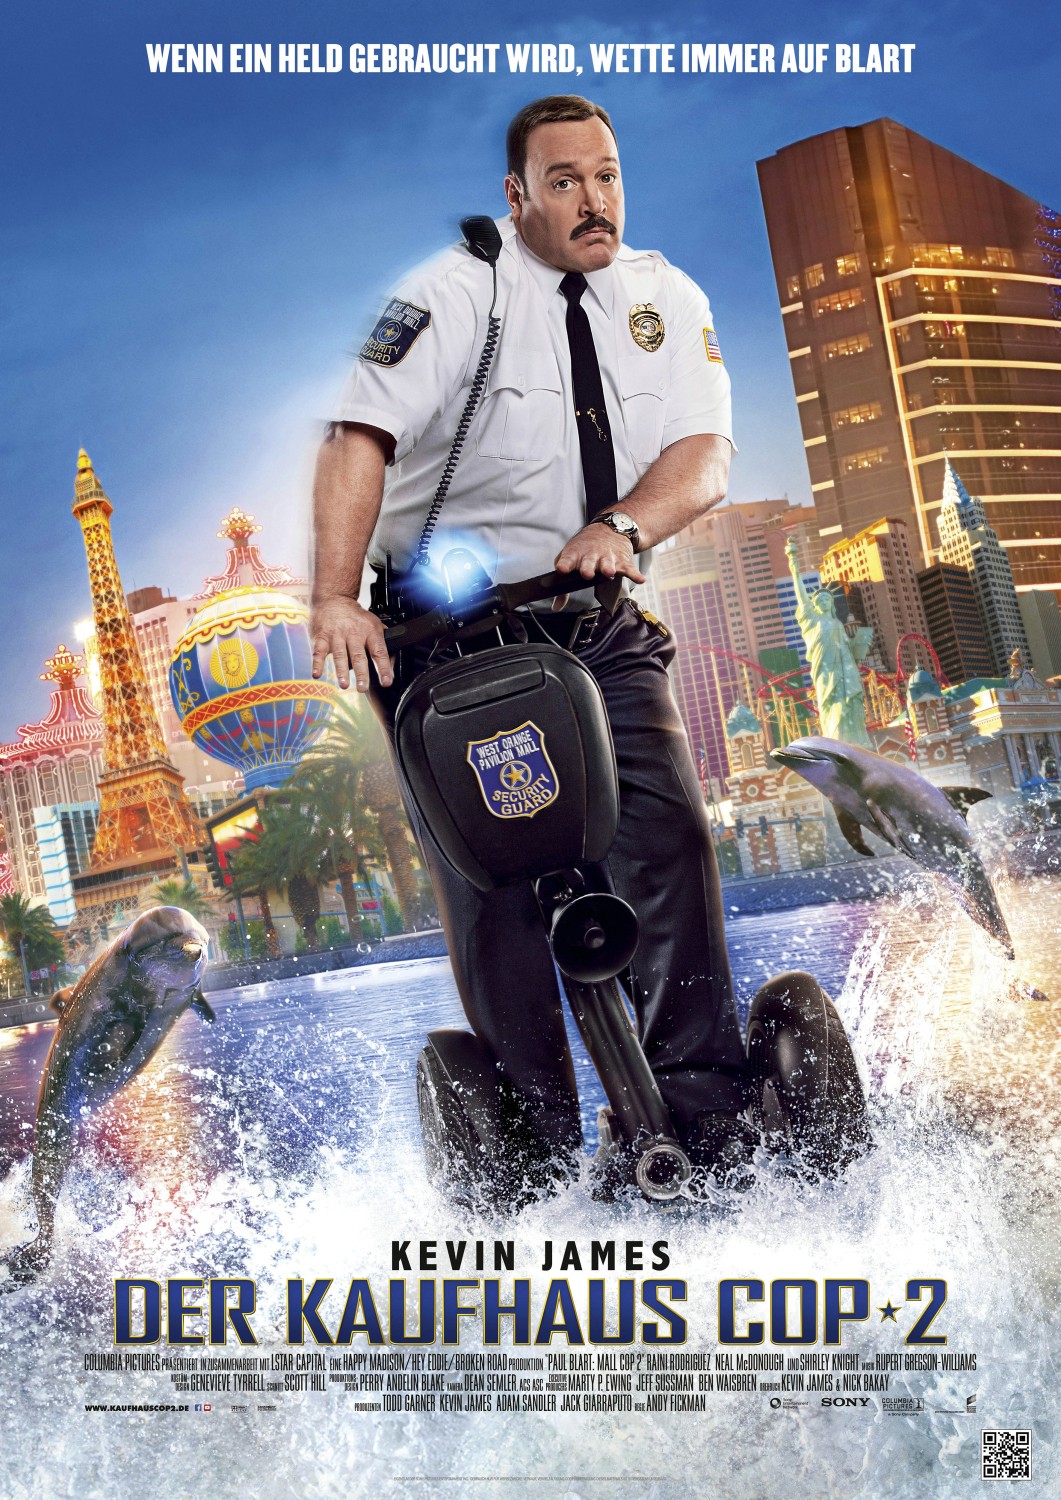 Paul Blart: Mall Cop 2 (2015) DVDRip | zerokinobox